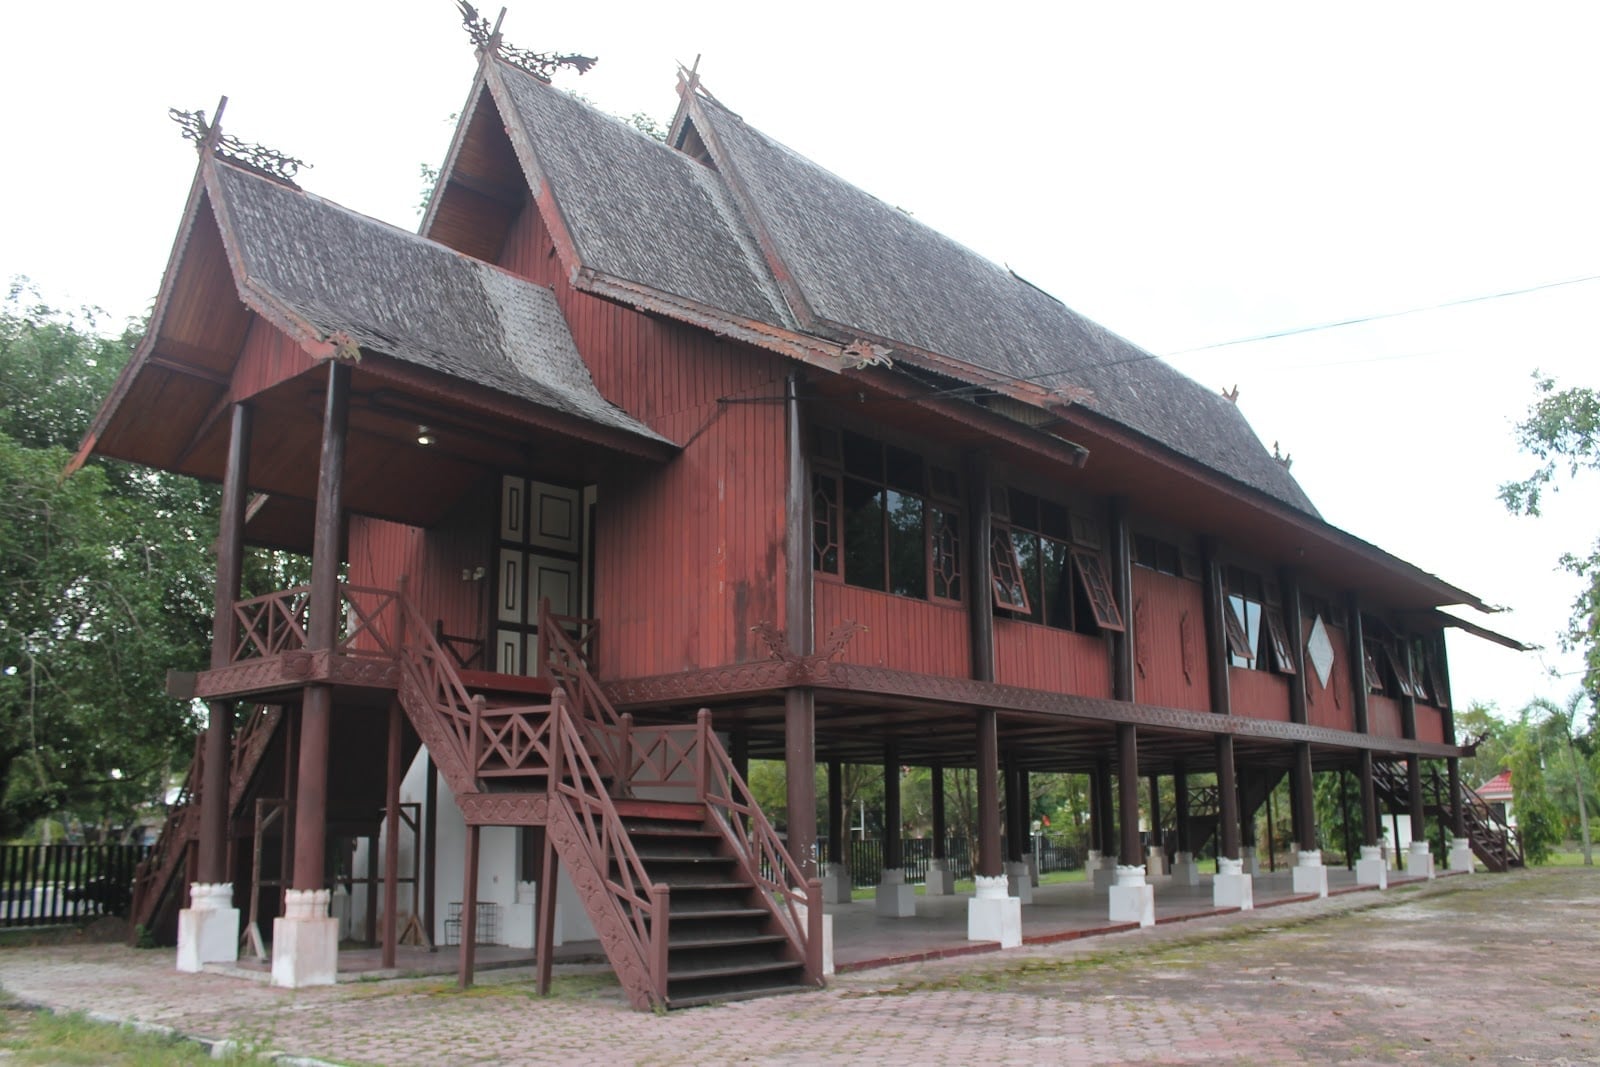 Mewah 21 Gambar Rumah Adat Gorontalo 87 Di Inspirasi Interior Rumah oleh 21 Gambar Rumah Adat Gorontalo